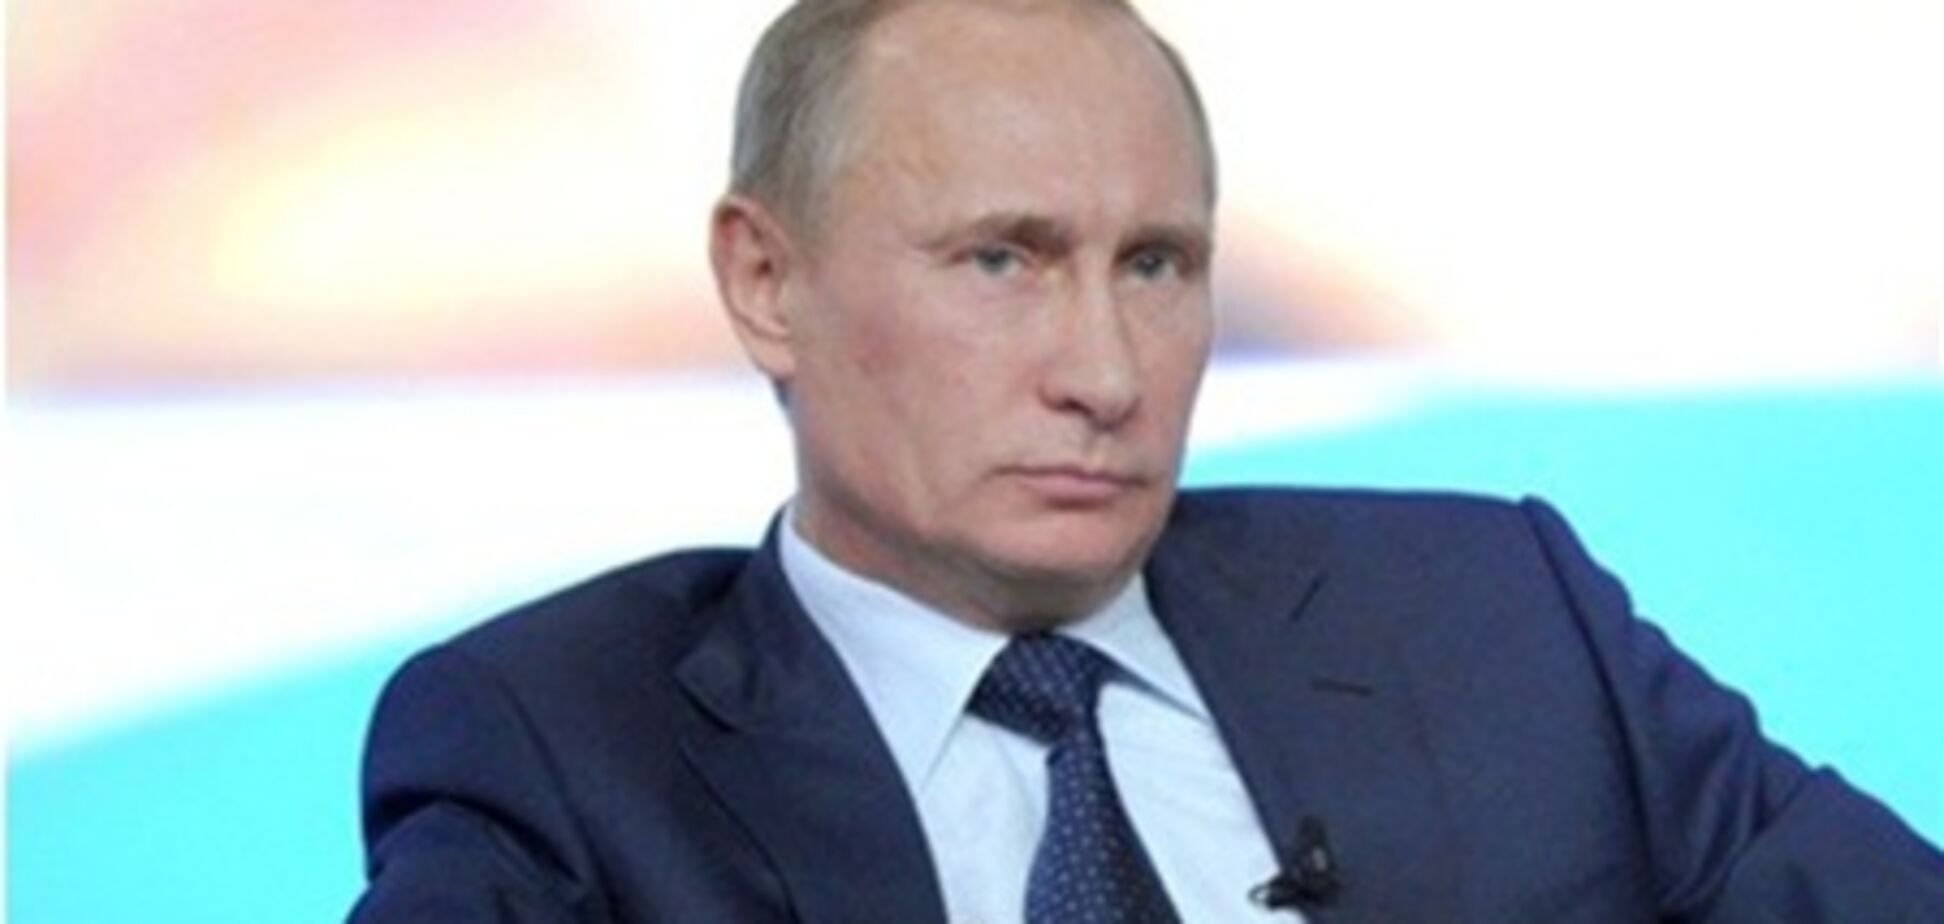 Опрос: рейтинг Путина падает, каждый третий россиянин готов протестовать